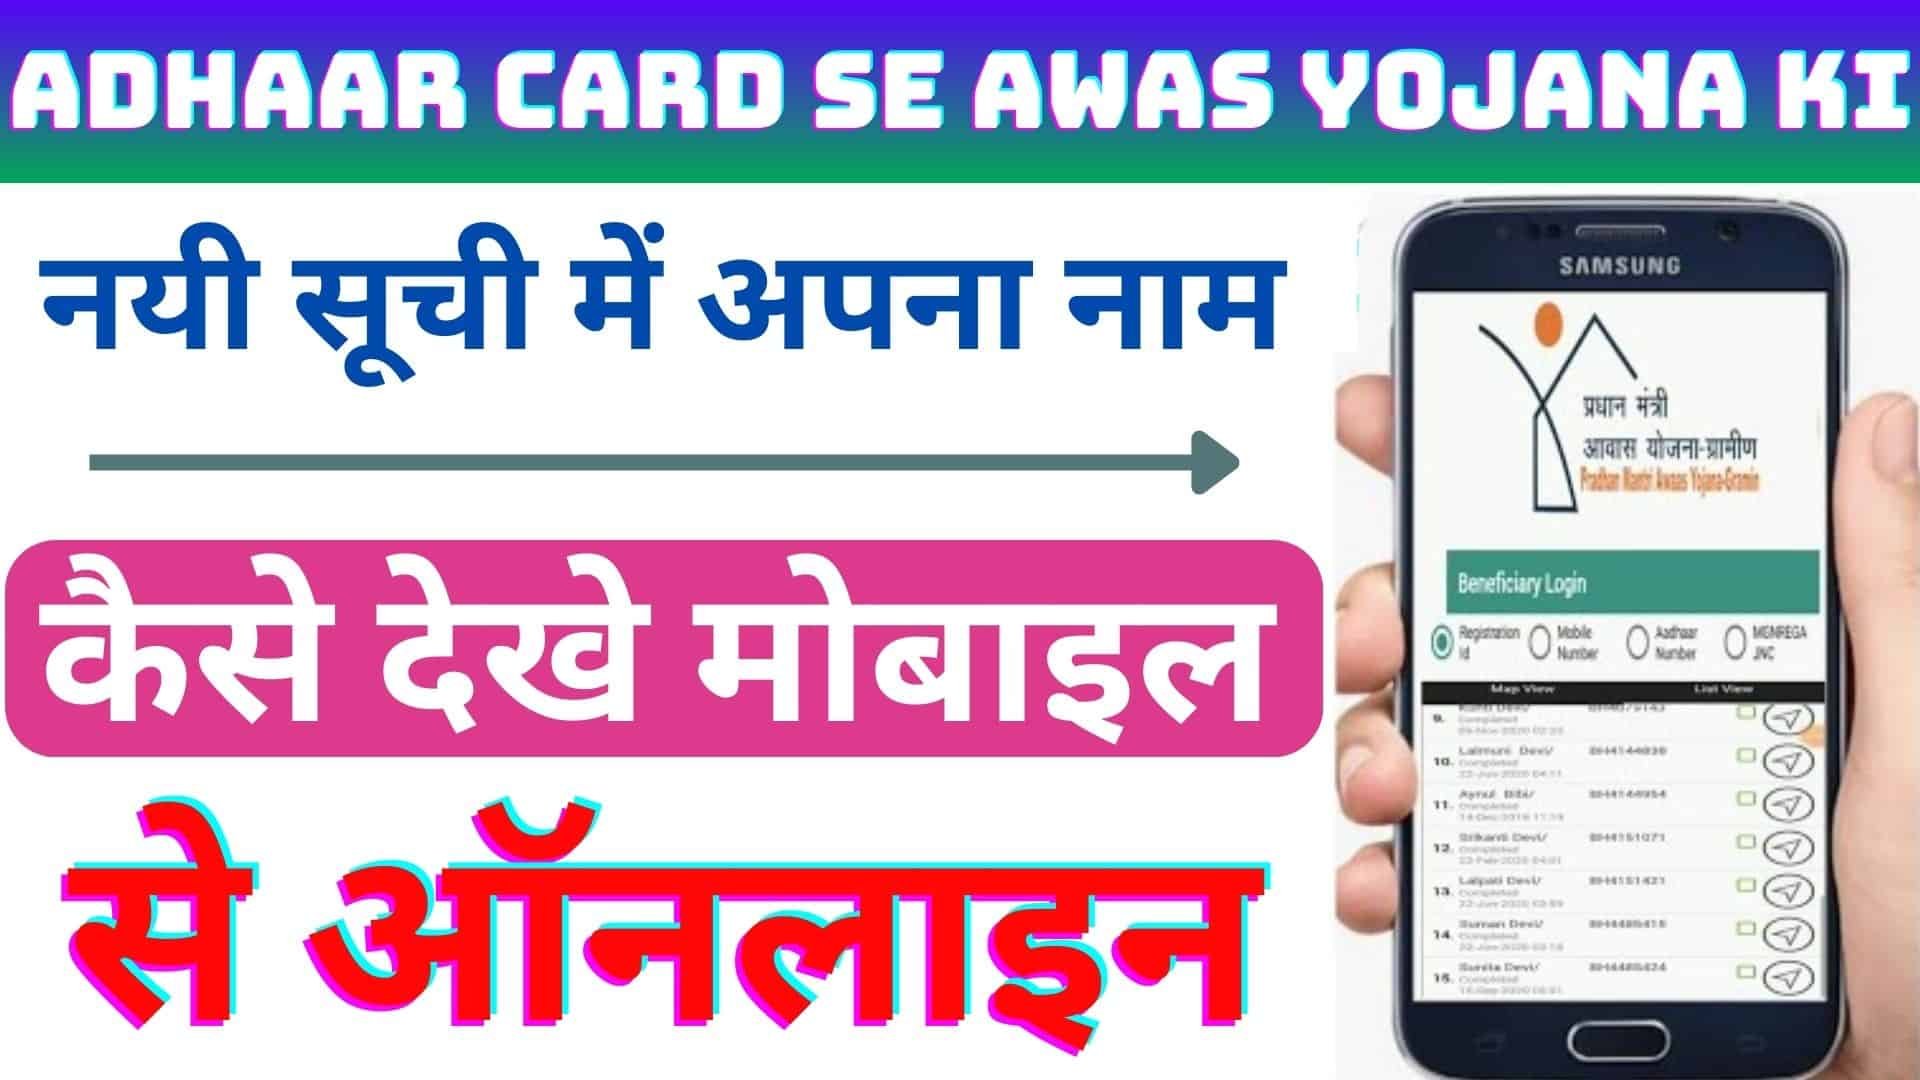 Adhaar Card Se Awas Yojana Ki : नयी सूची में अपना नाम कैसे देखे मोबाइल से ऑनलाइन